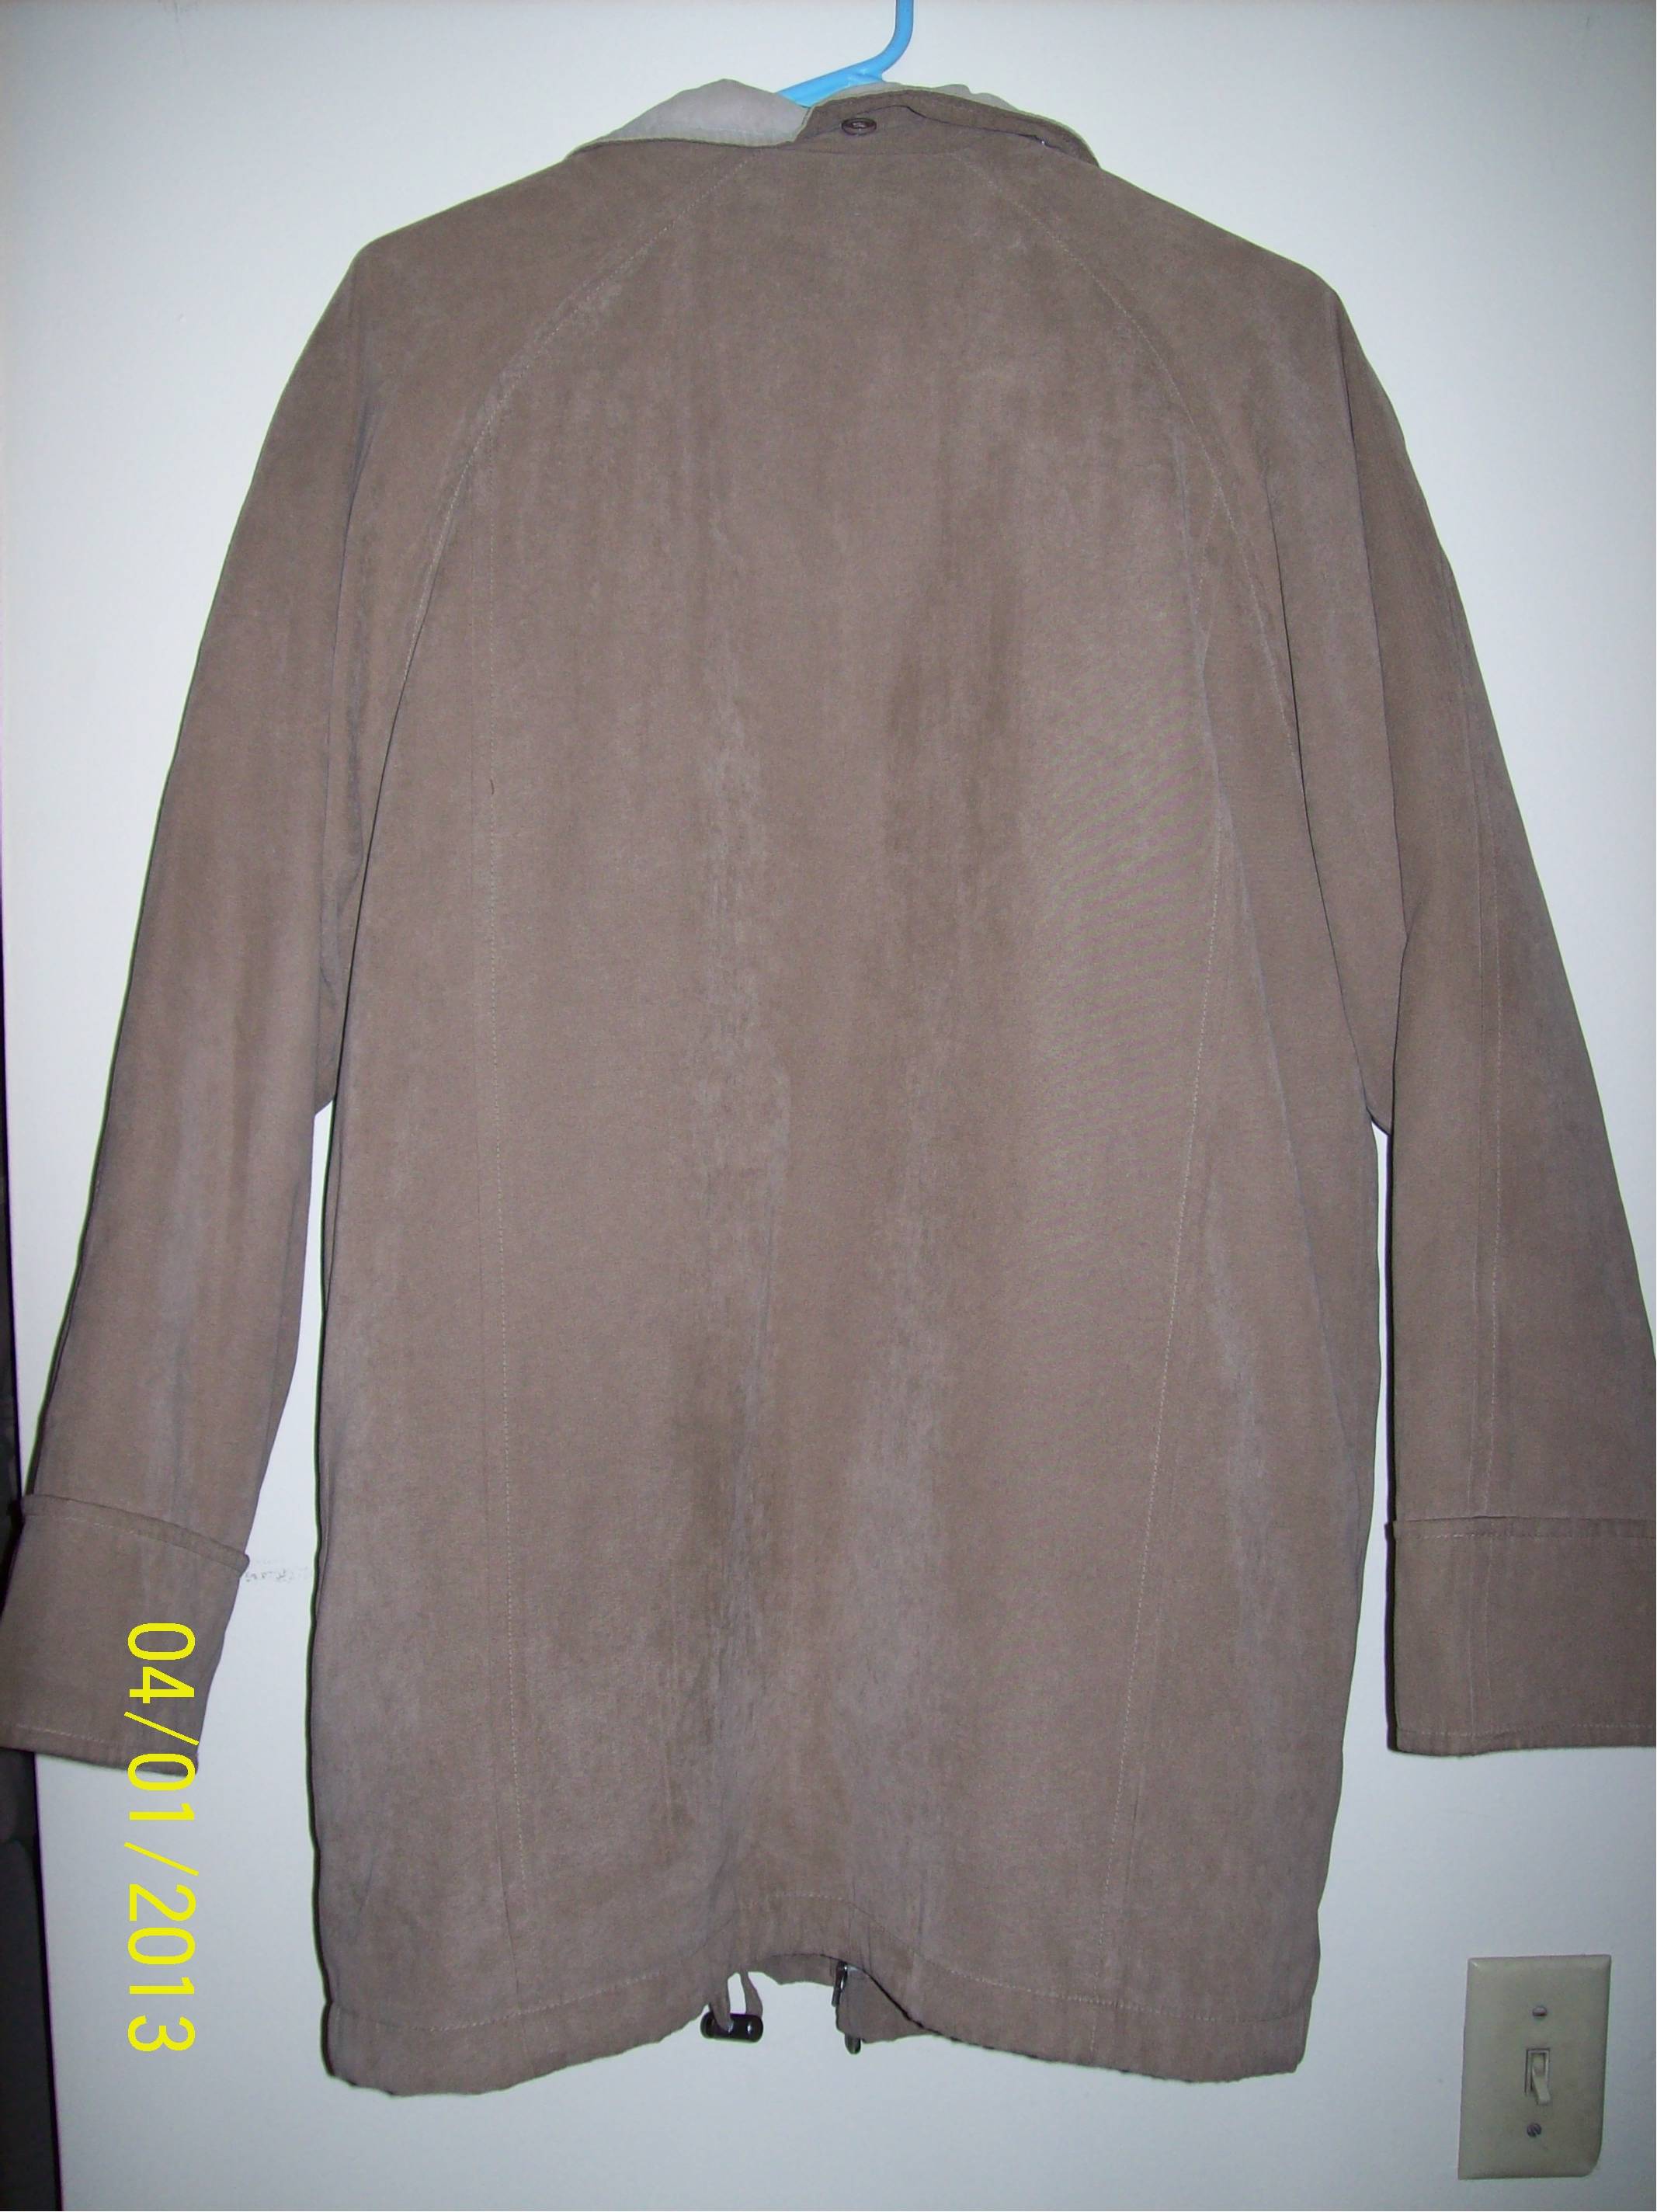 London Fog Suede Jacket Tan/Beige Zip Out Liner with Hood -- Medium (M)